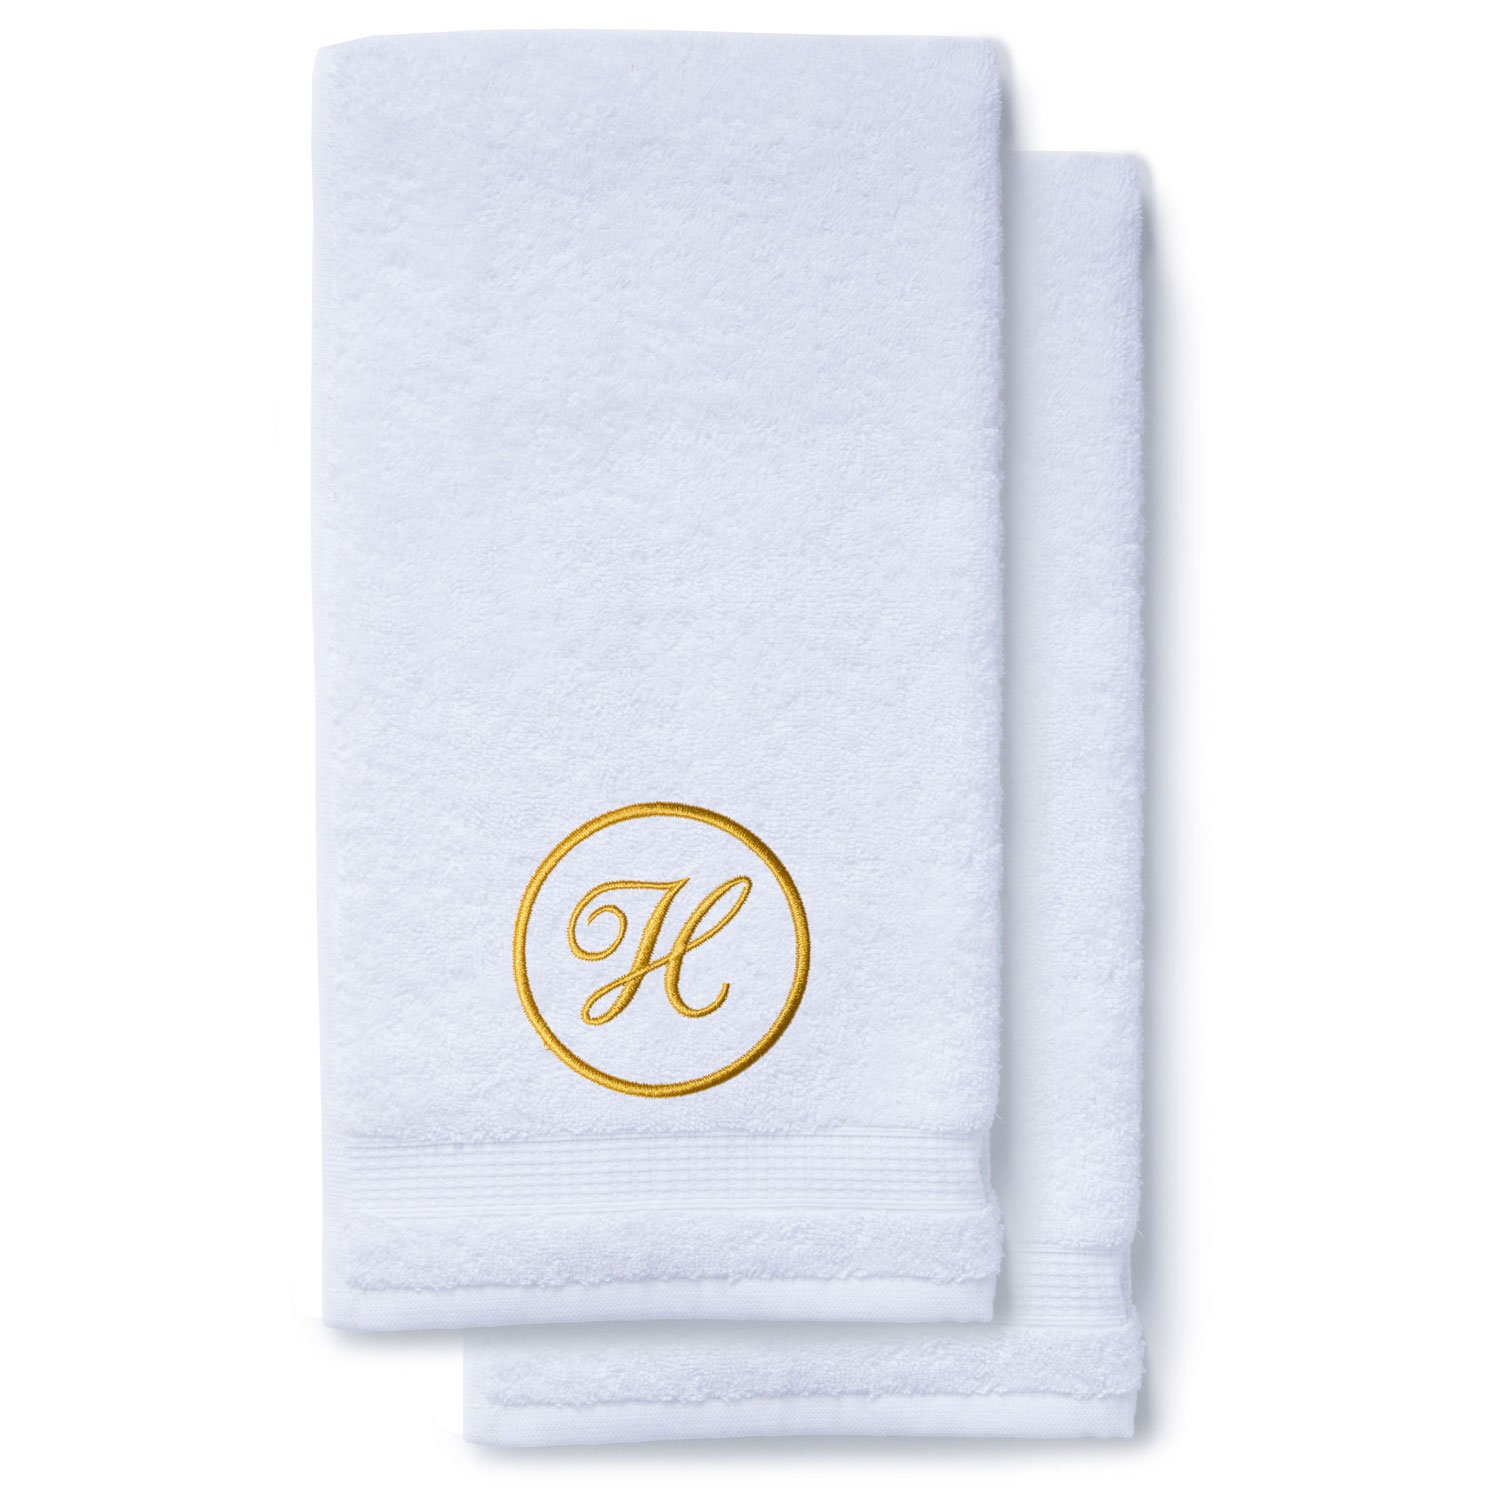 Gold Initial Premium Hand Towel Script 16 X 30 Inch, Set of 2-Robemart.com